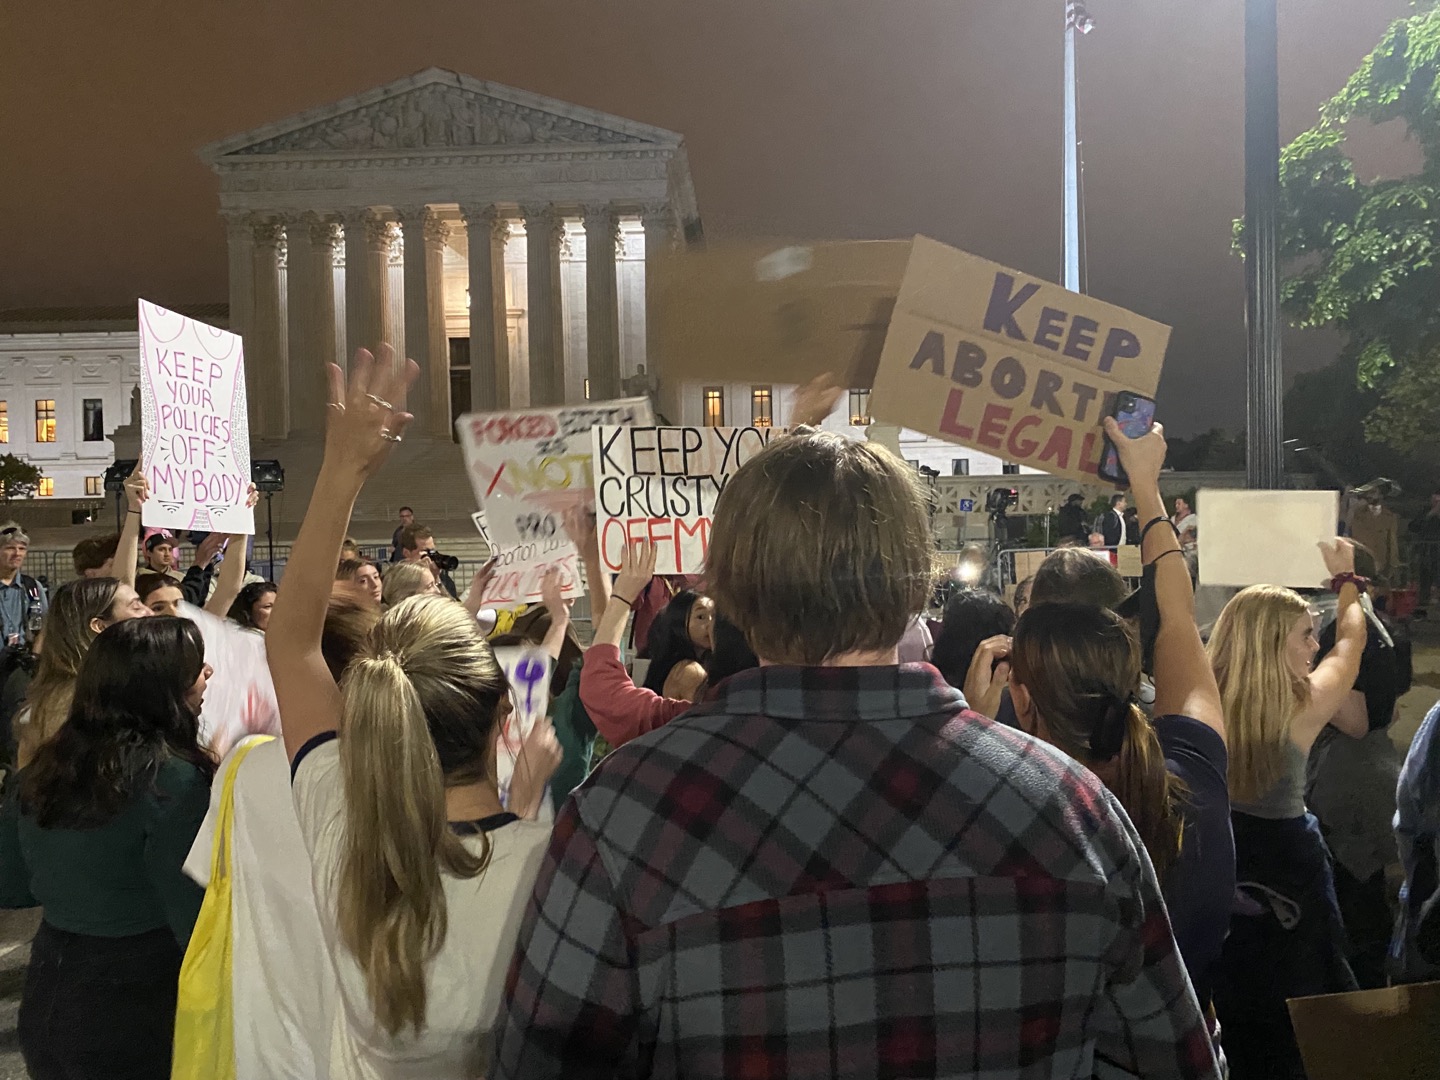 미 연방대법원이 낙태권을 보장한 판결을 뒤집을 거라는 보도가 나온 이튿날인 3일(현지시간) 시위대가 밤늦은 시간까지 워싱턴DC 연방대법원 정문 앞에서 반대 집회를 열고 있다. 워싱턴 이경주 특파원